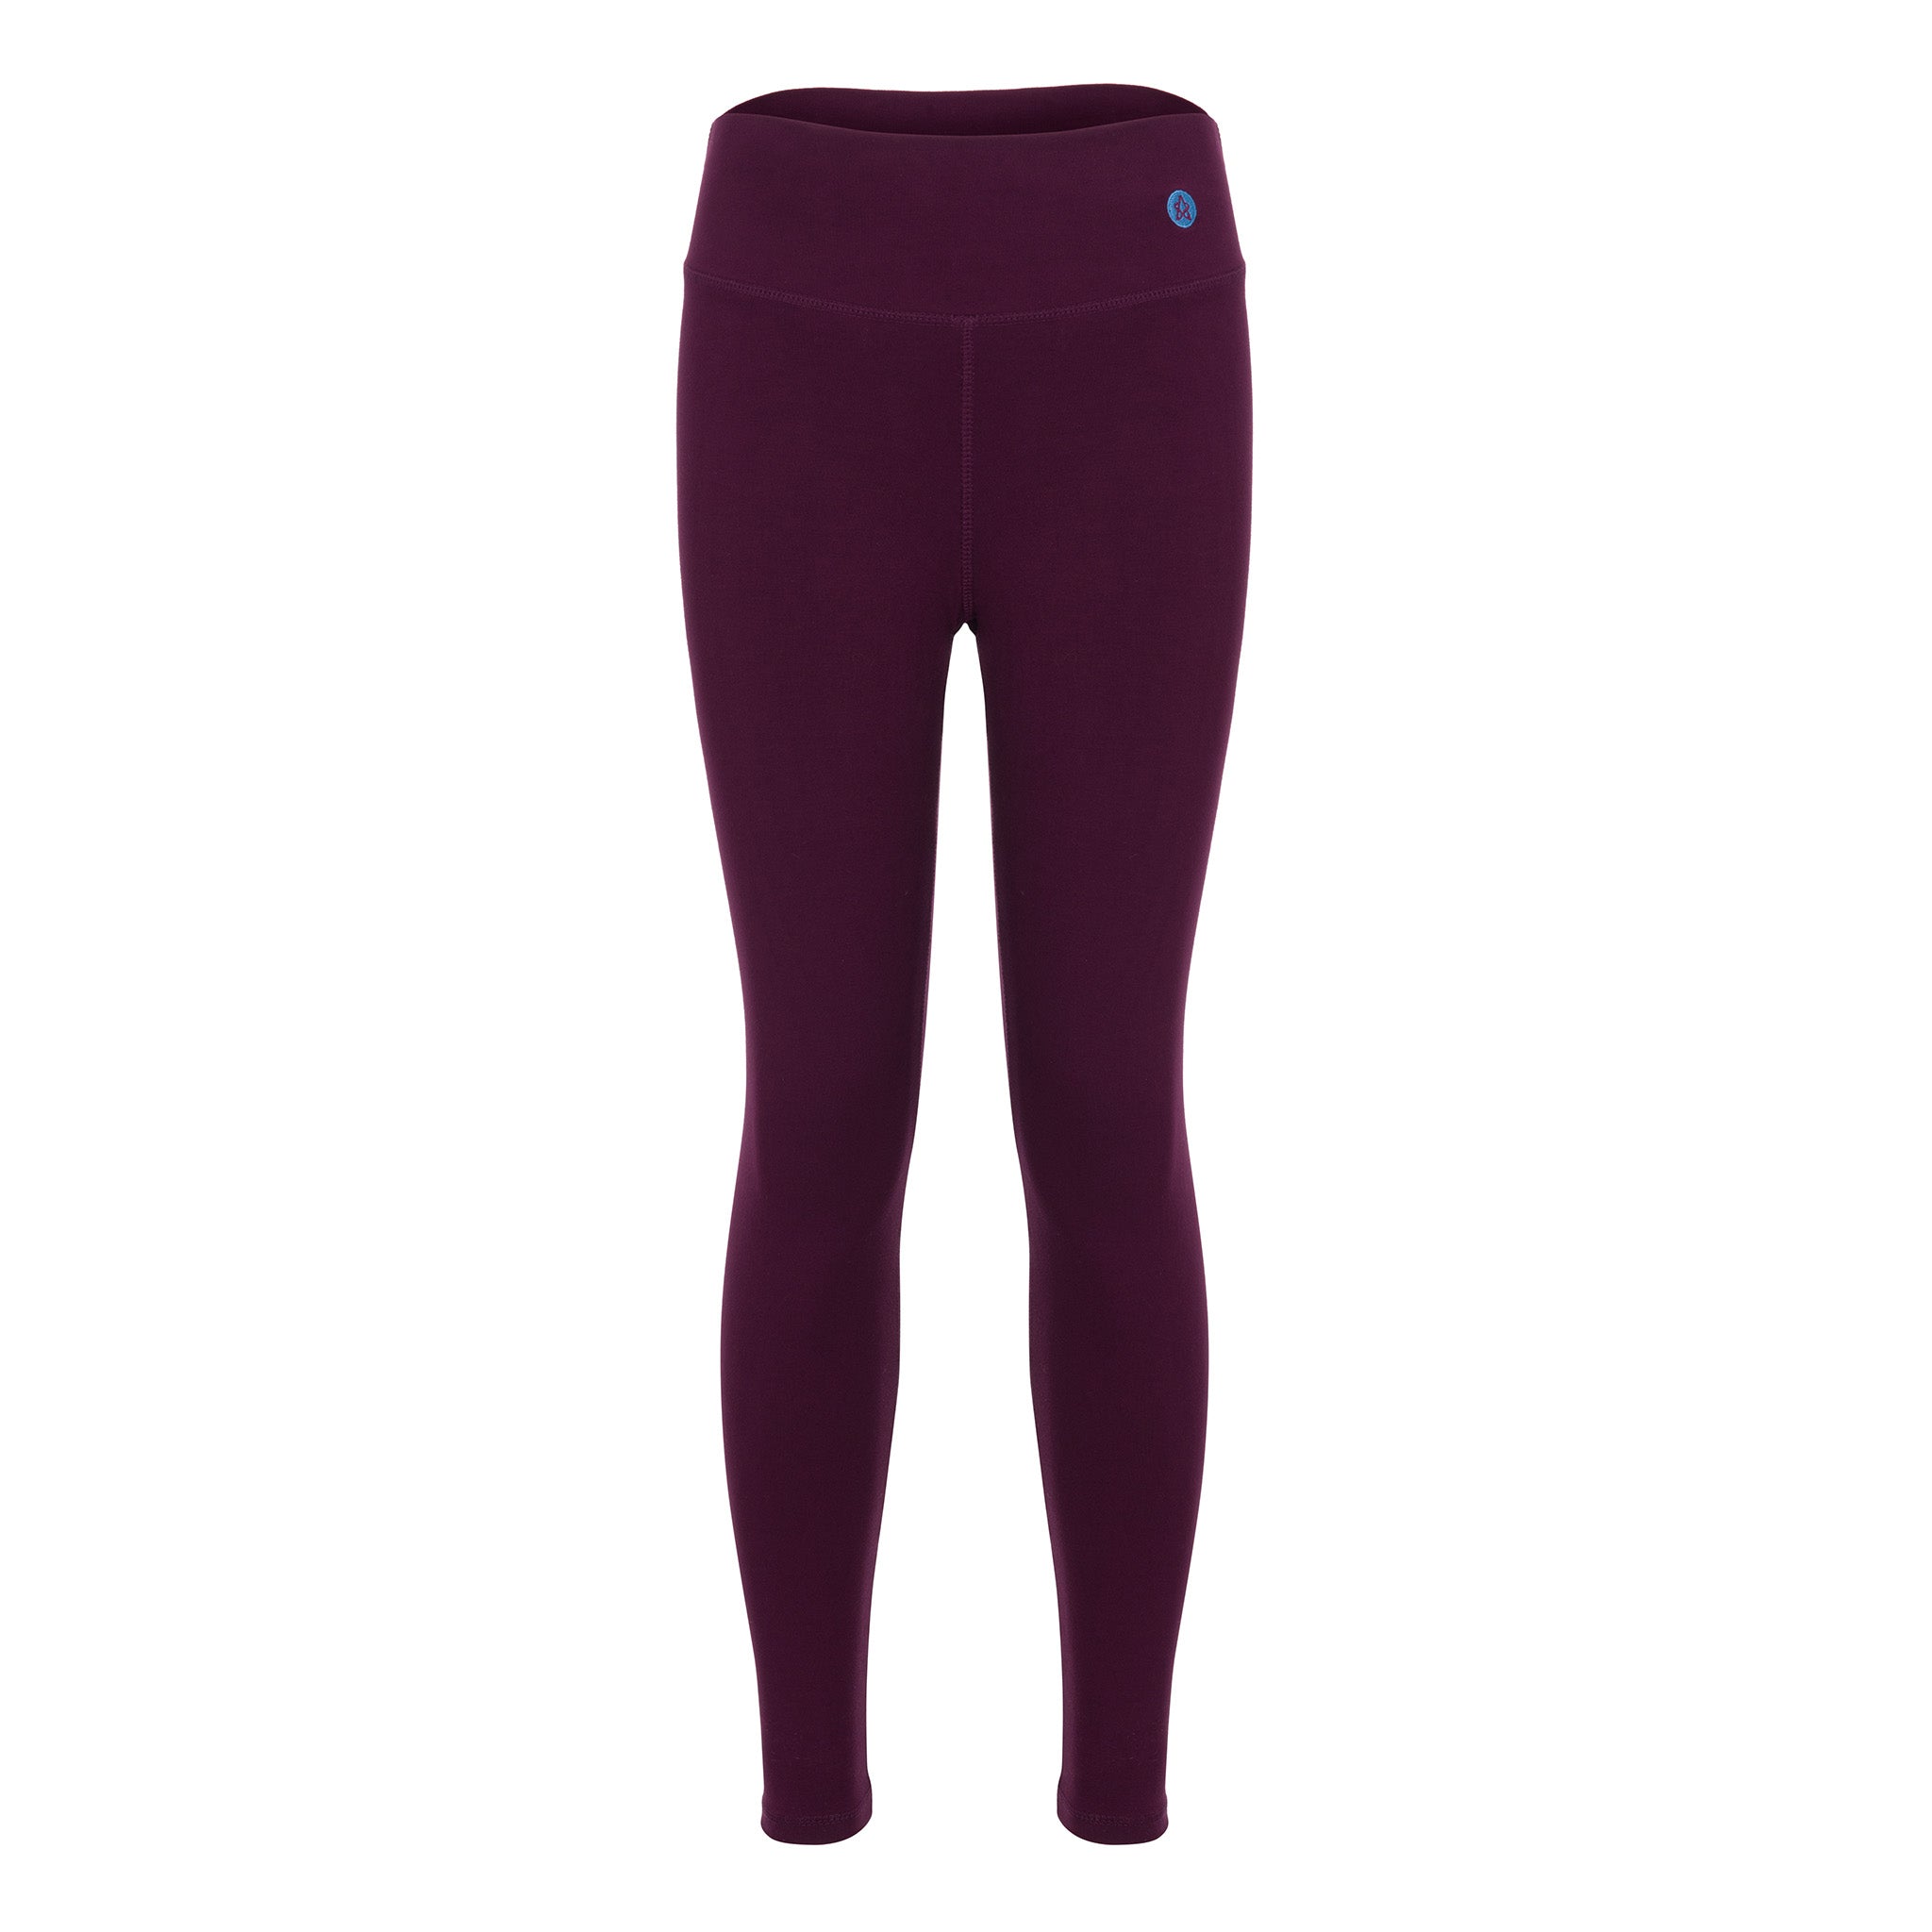 Buy Kica Women's Dash Leggings (10314203_Purple_Large) at